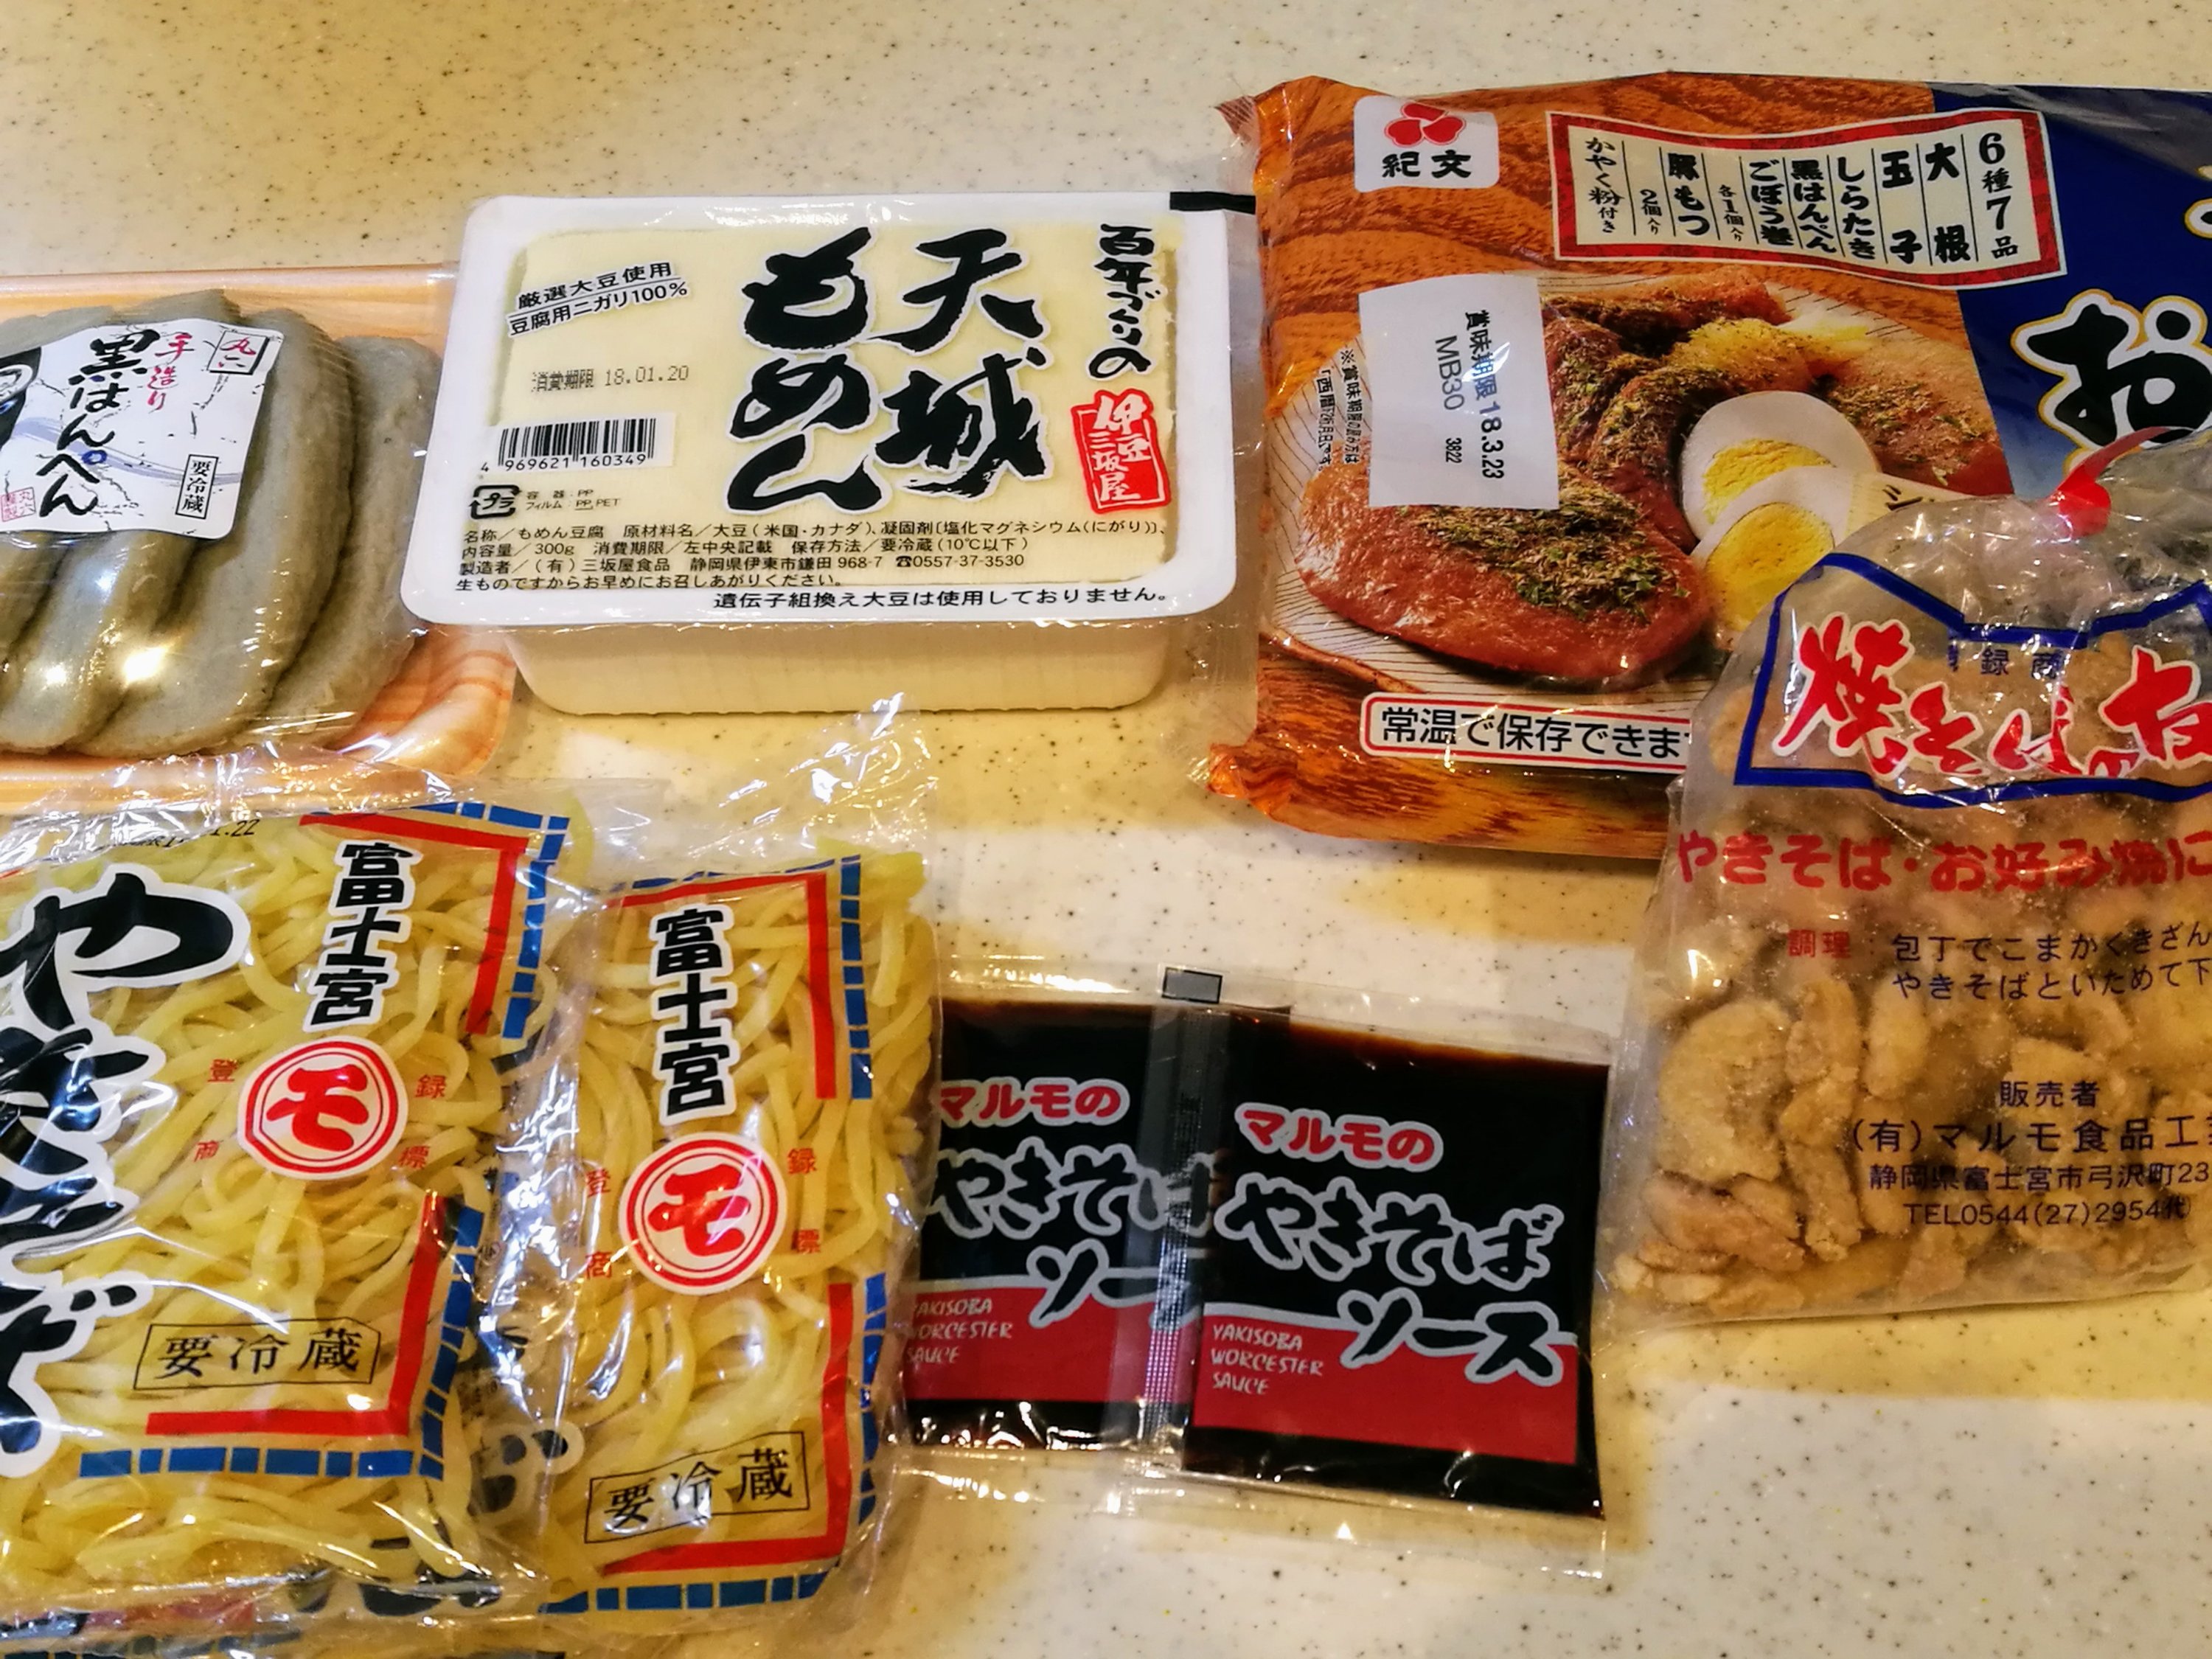 沼津のスーパーで買った食材で富士宮焼きそばを作ってみました Koi Chef Blog